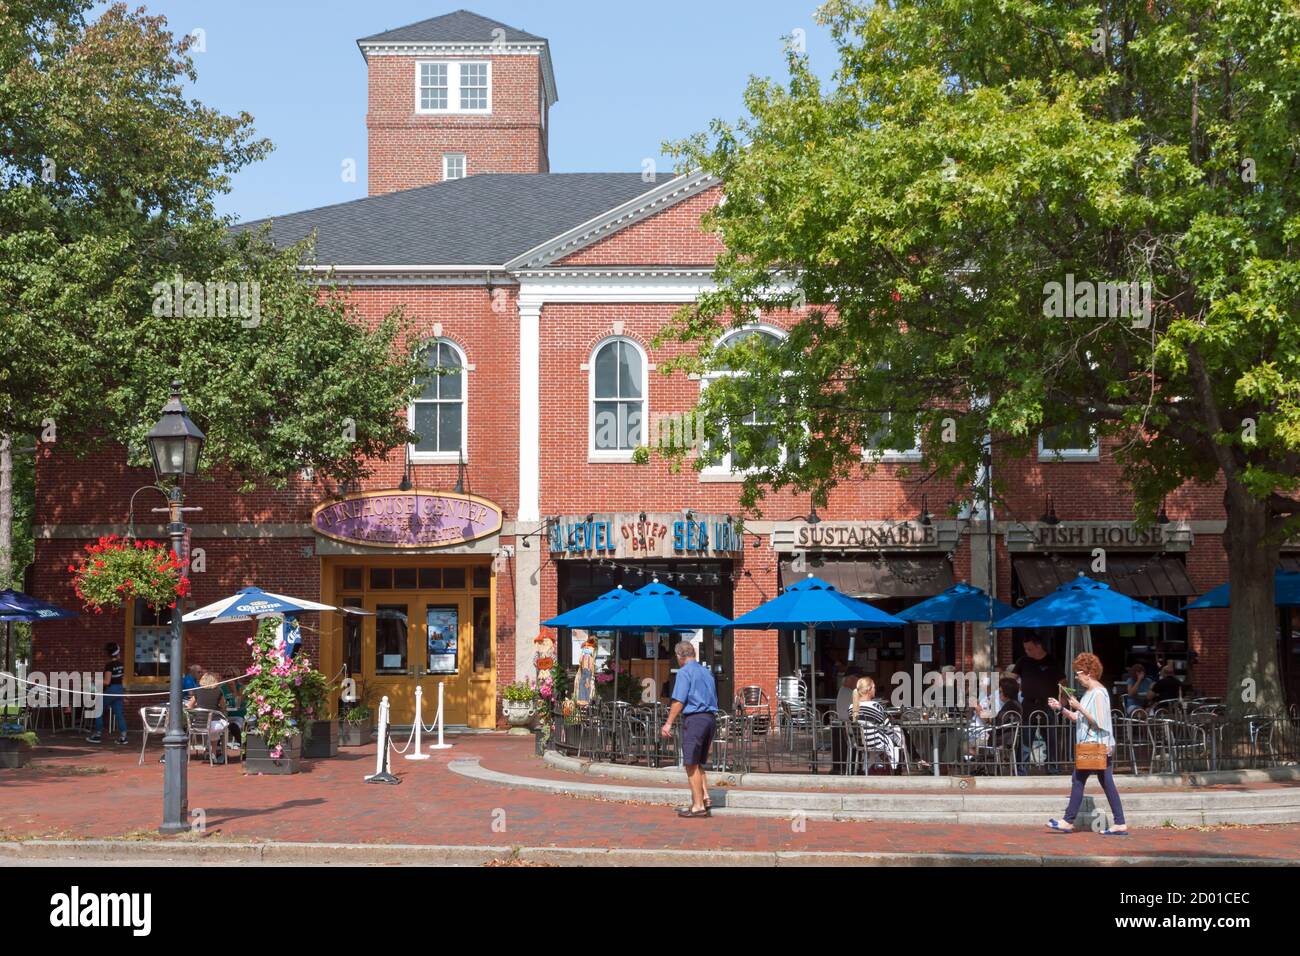 Sea Level Oyster Bar Restaurant nella storica Market Square, Newburyport, Massachusetts, Stati Uniti, Stati Uniti Foto Stock